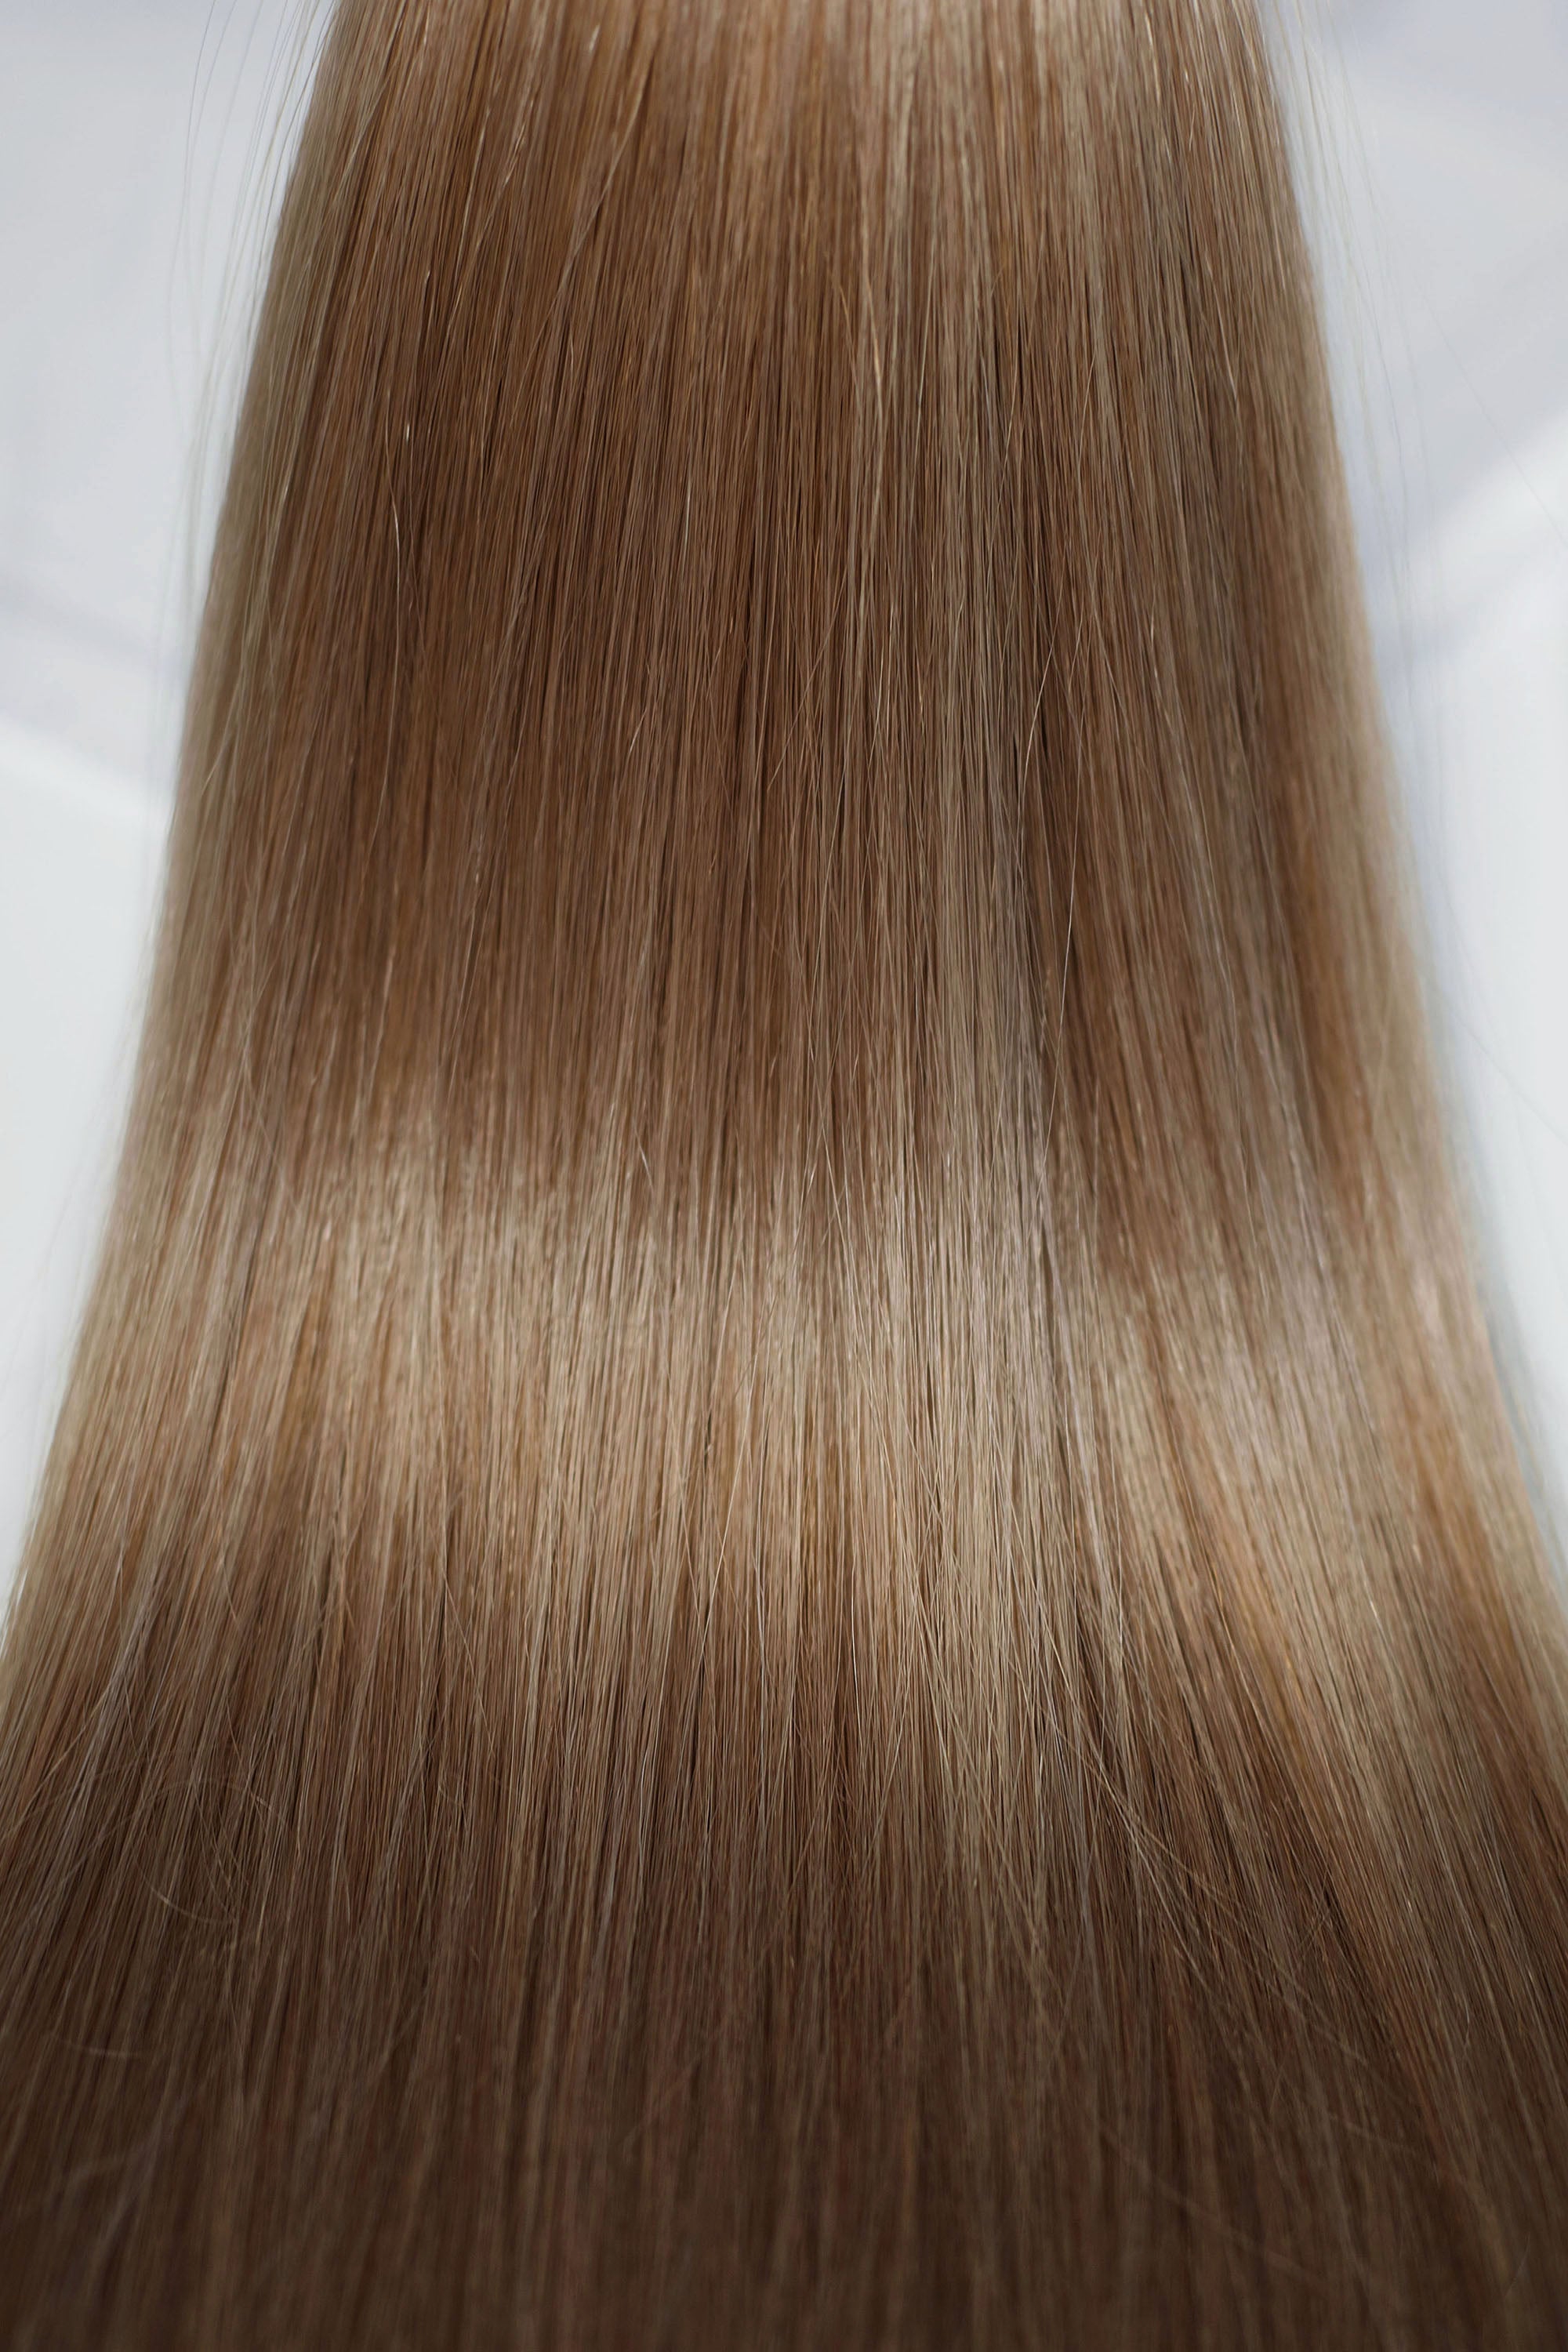 Behair professional Bulk hair "Premium" 20" (50cm) Natural Straight Light Ash Brown #10 - 25g hair extensions